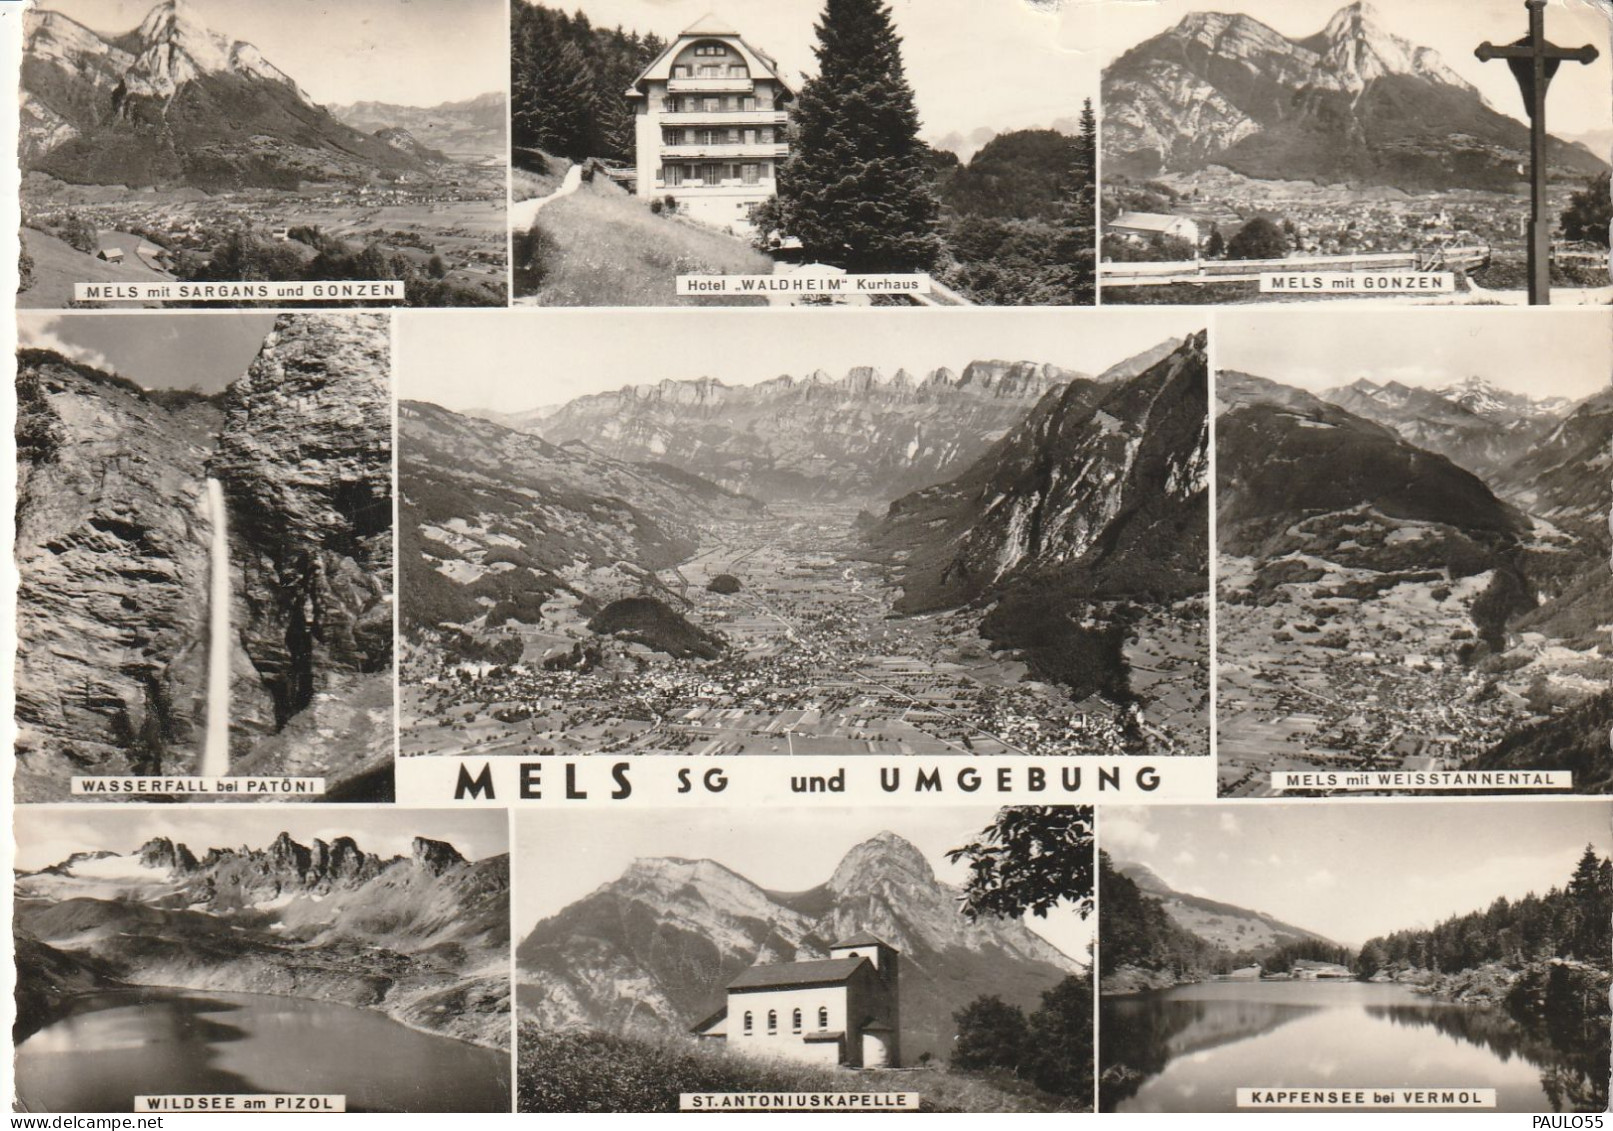 MELS - Mels